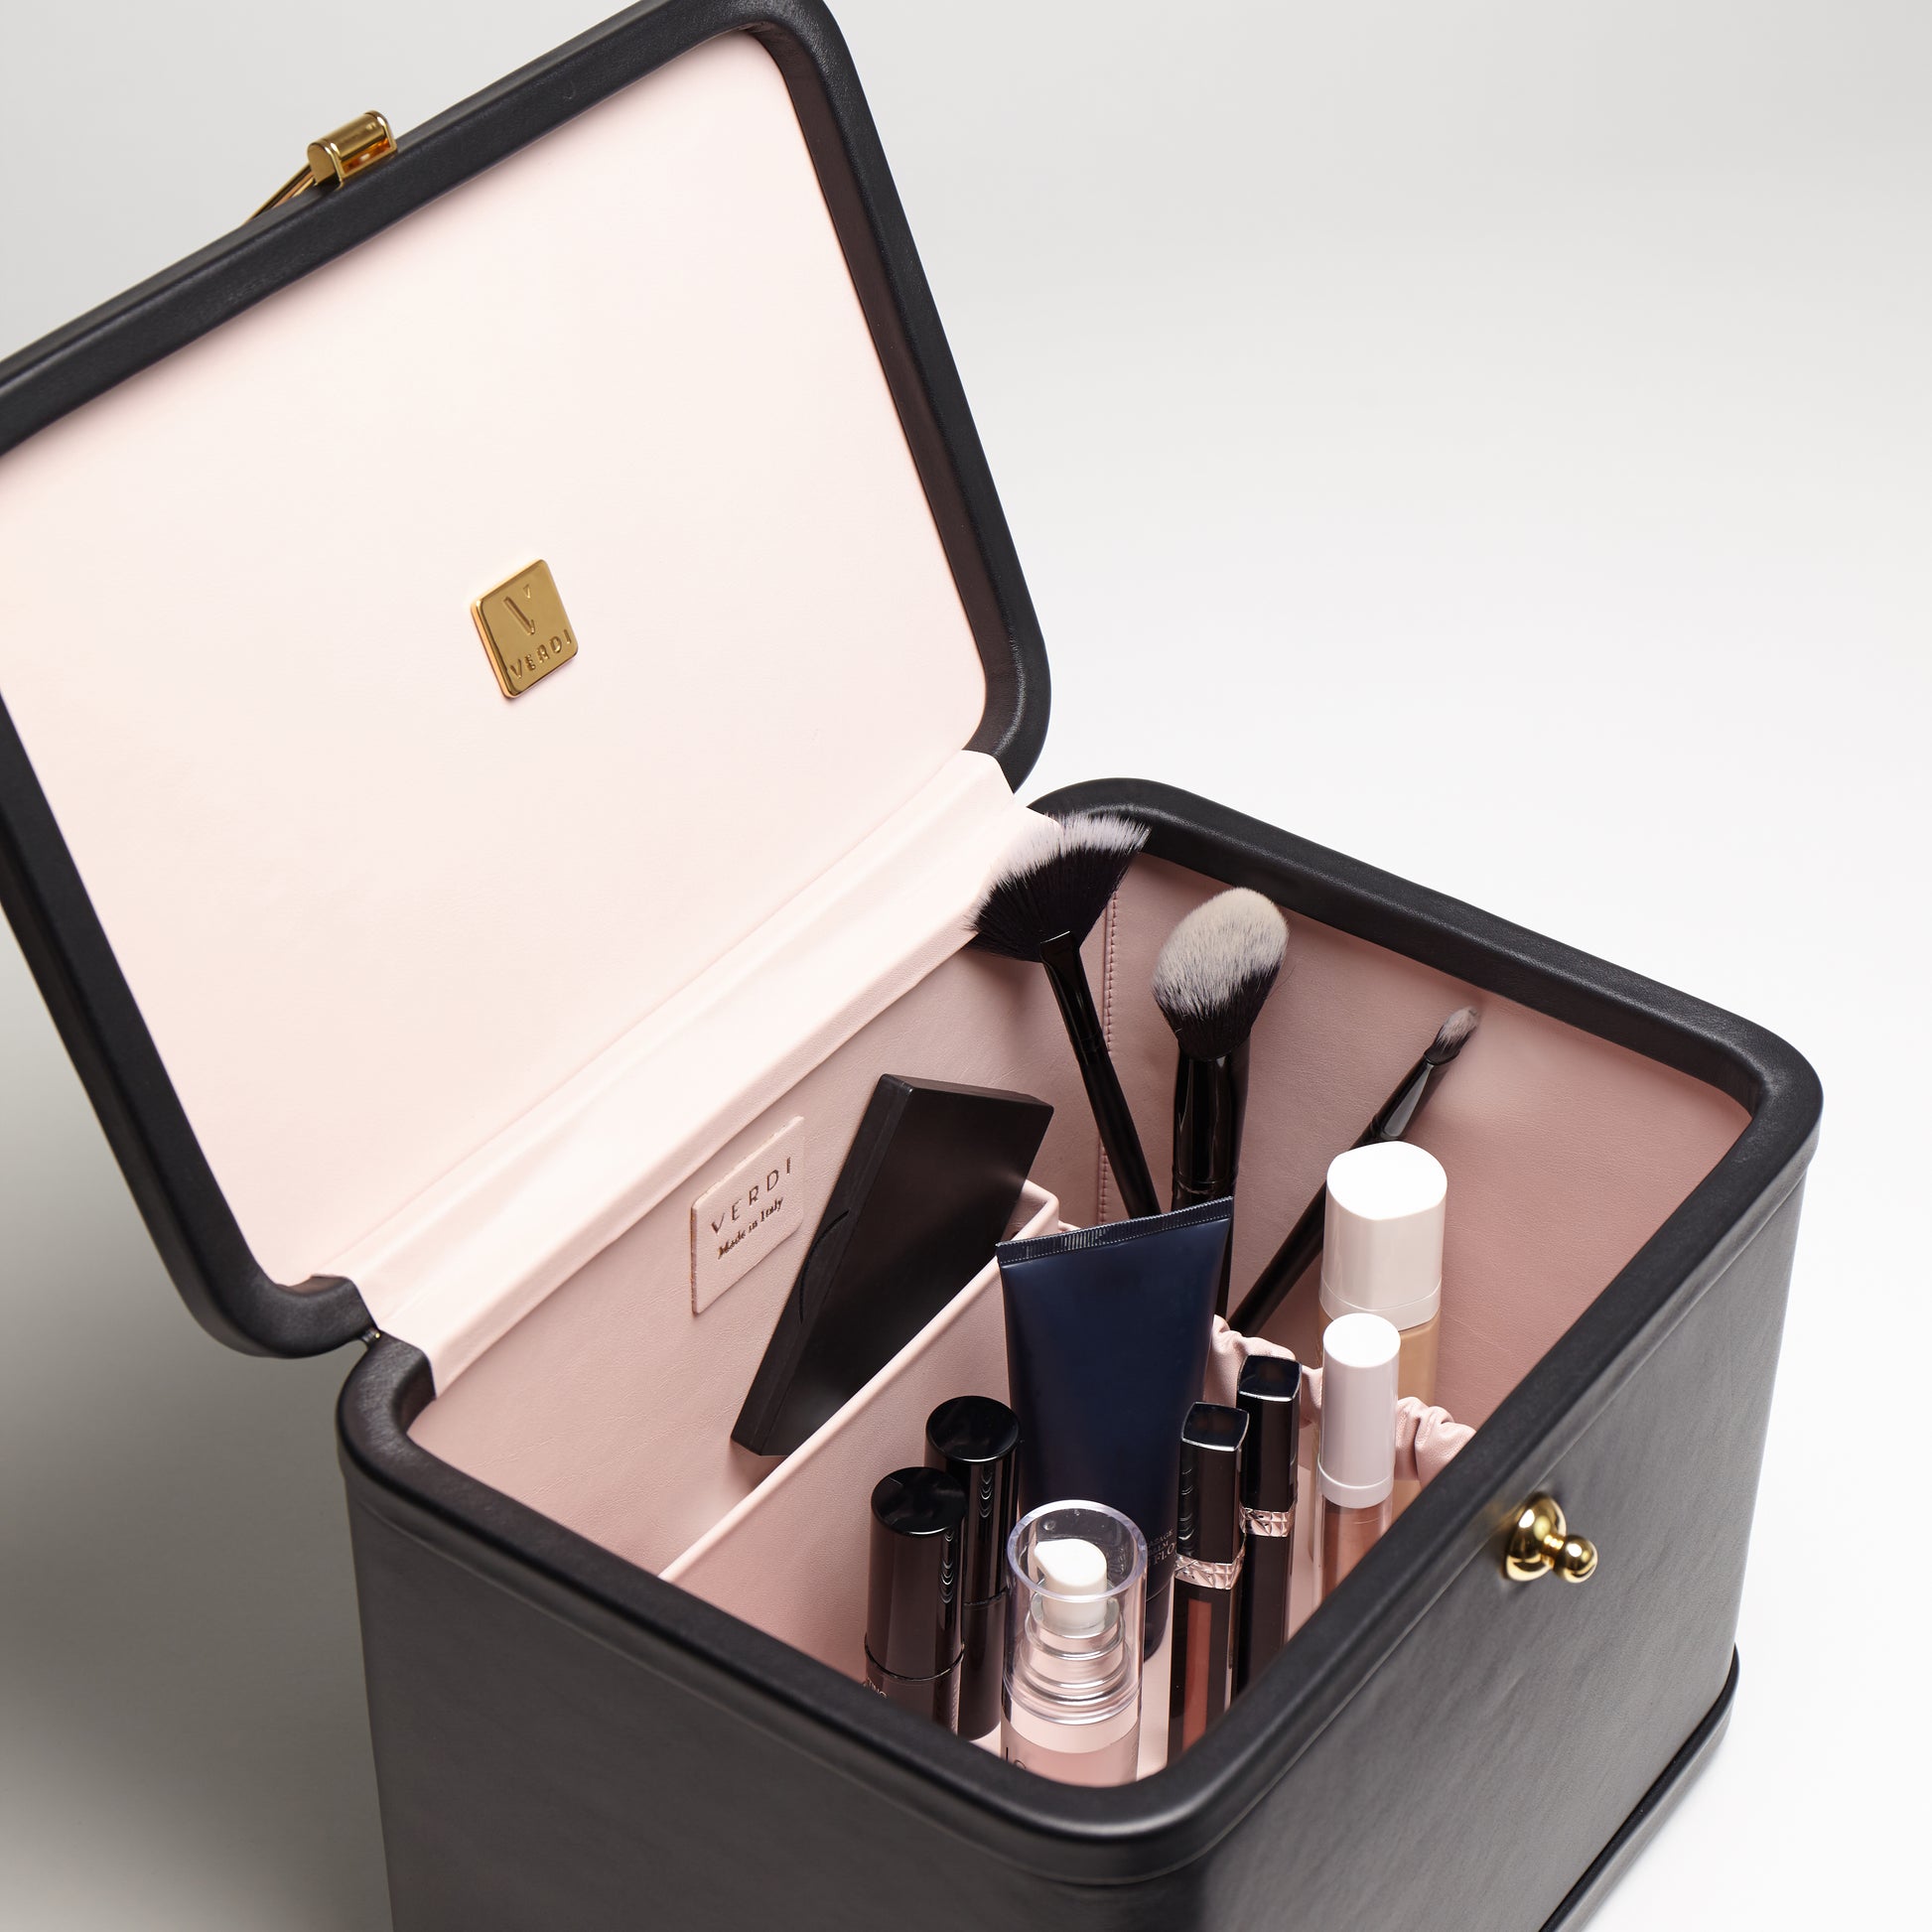 Atelier Verdi onyx black Livia medium vanity case with cosmetics